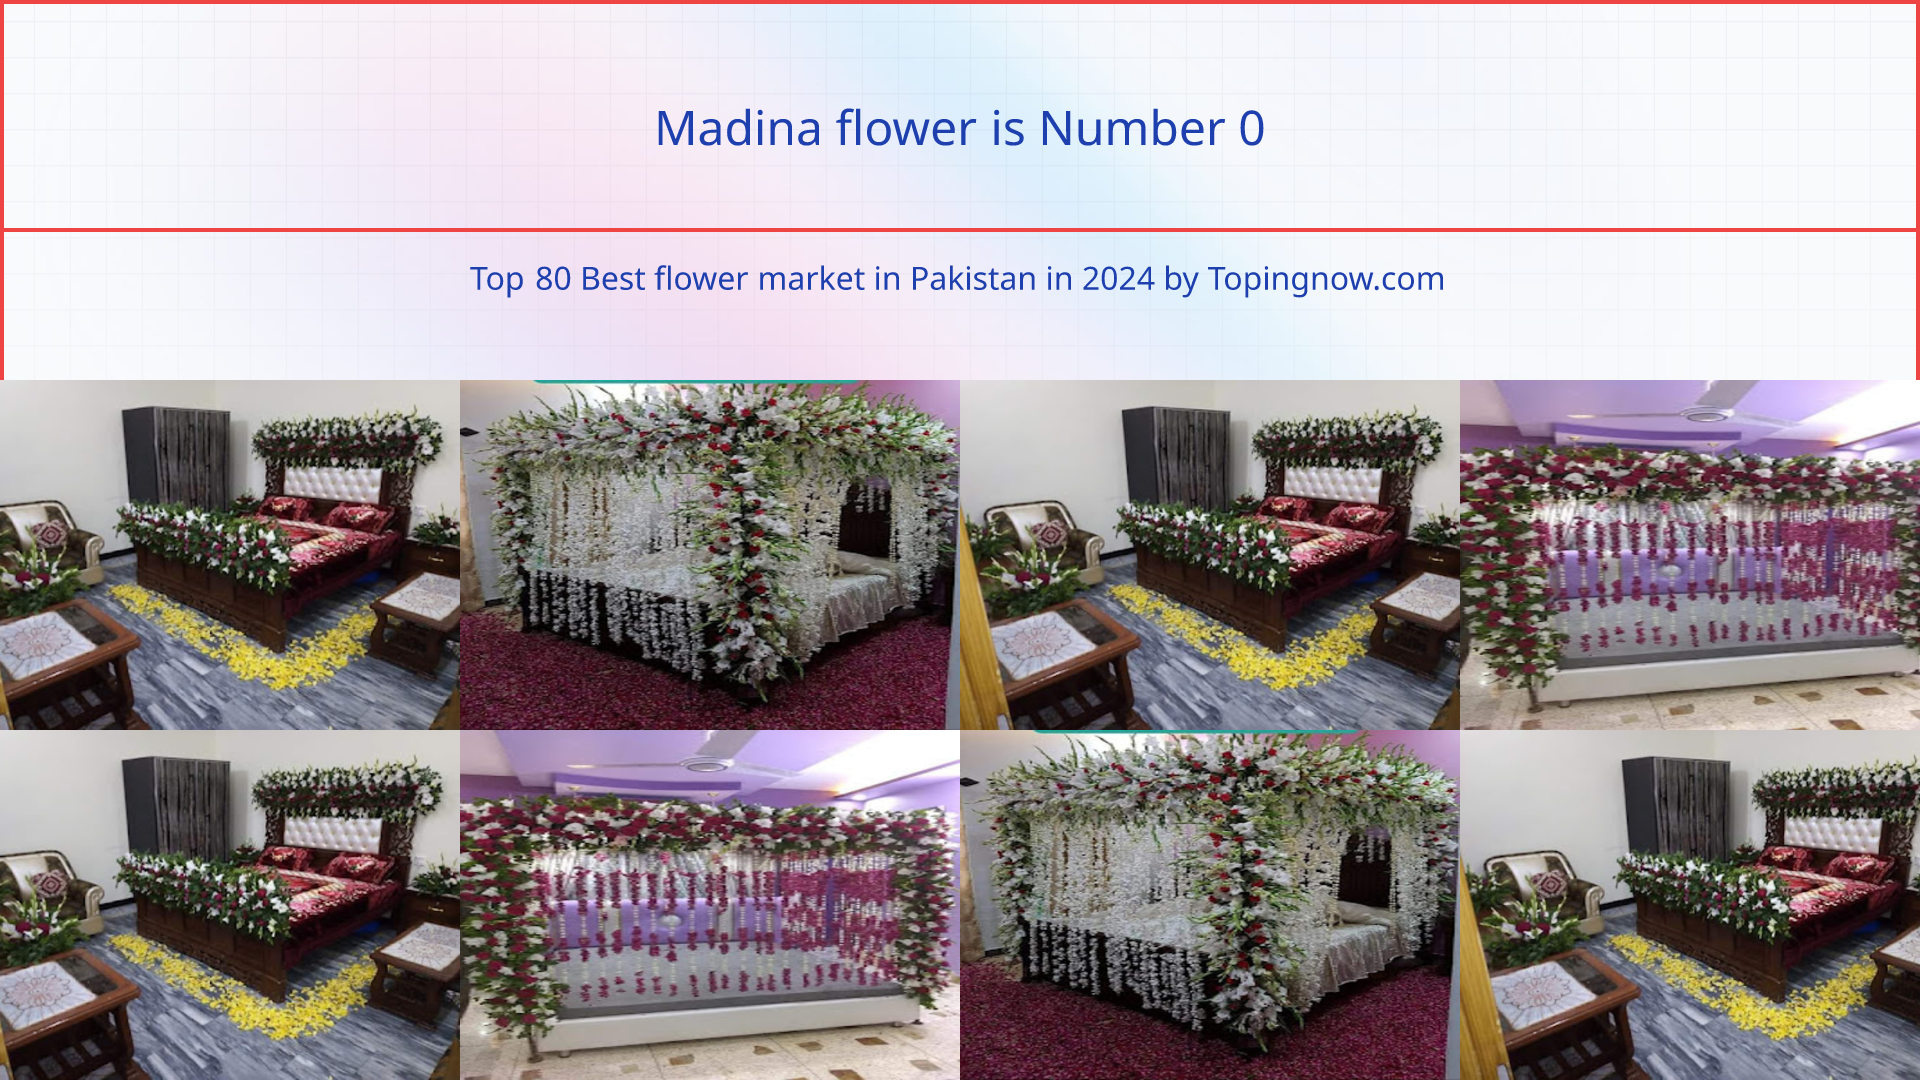 Madina flower: Top 80 Best flower market in Pakistan in 2024